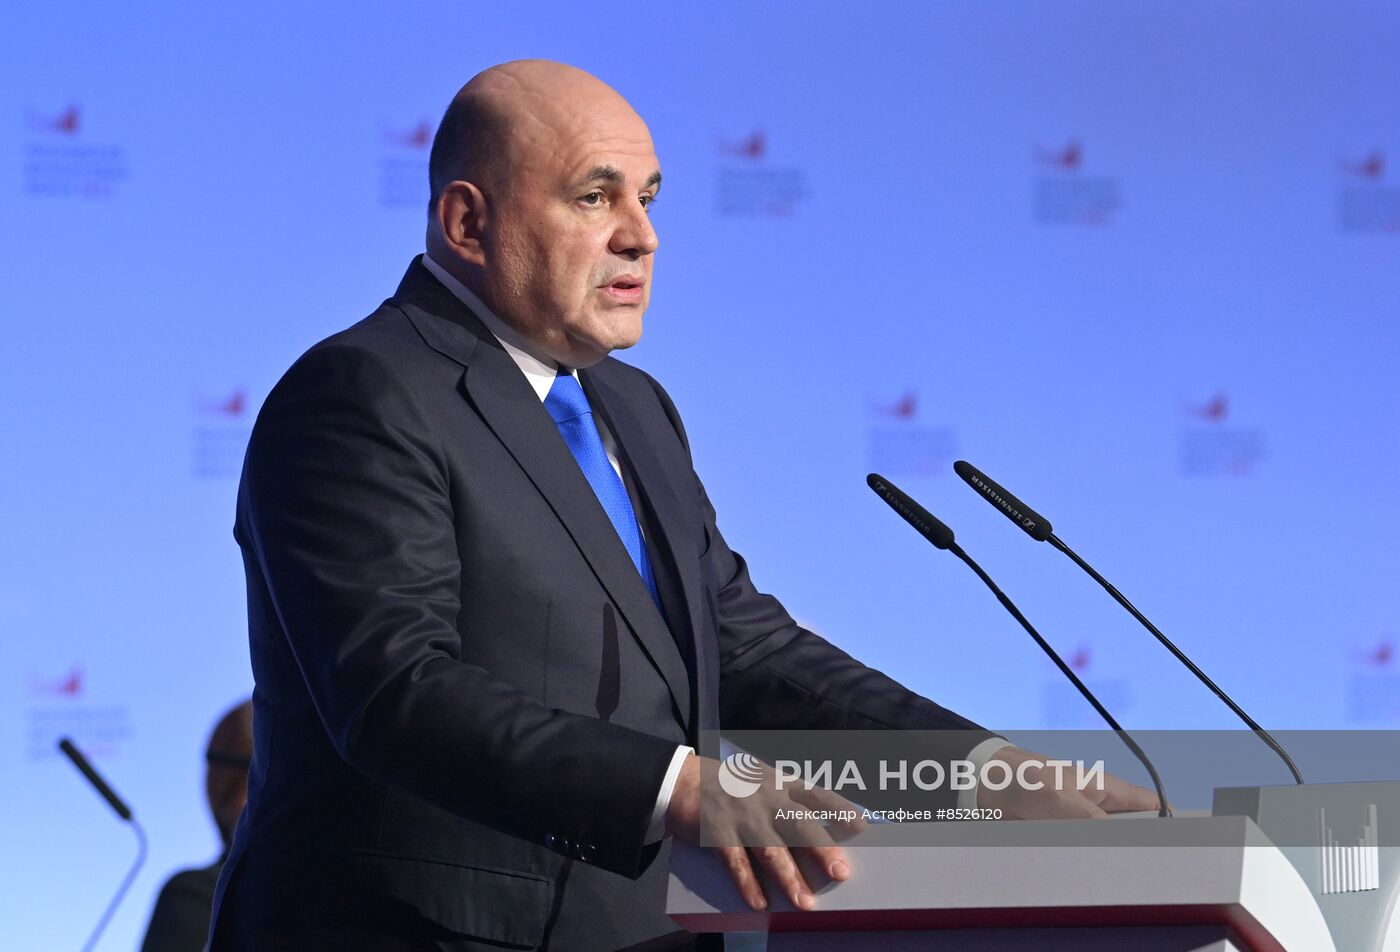 Премьер-министр РФ М. Мишустин принял участие в работе Московского финансового форума